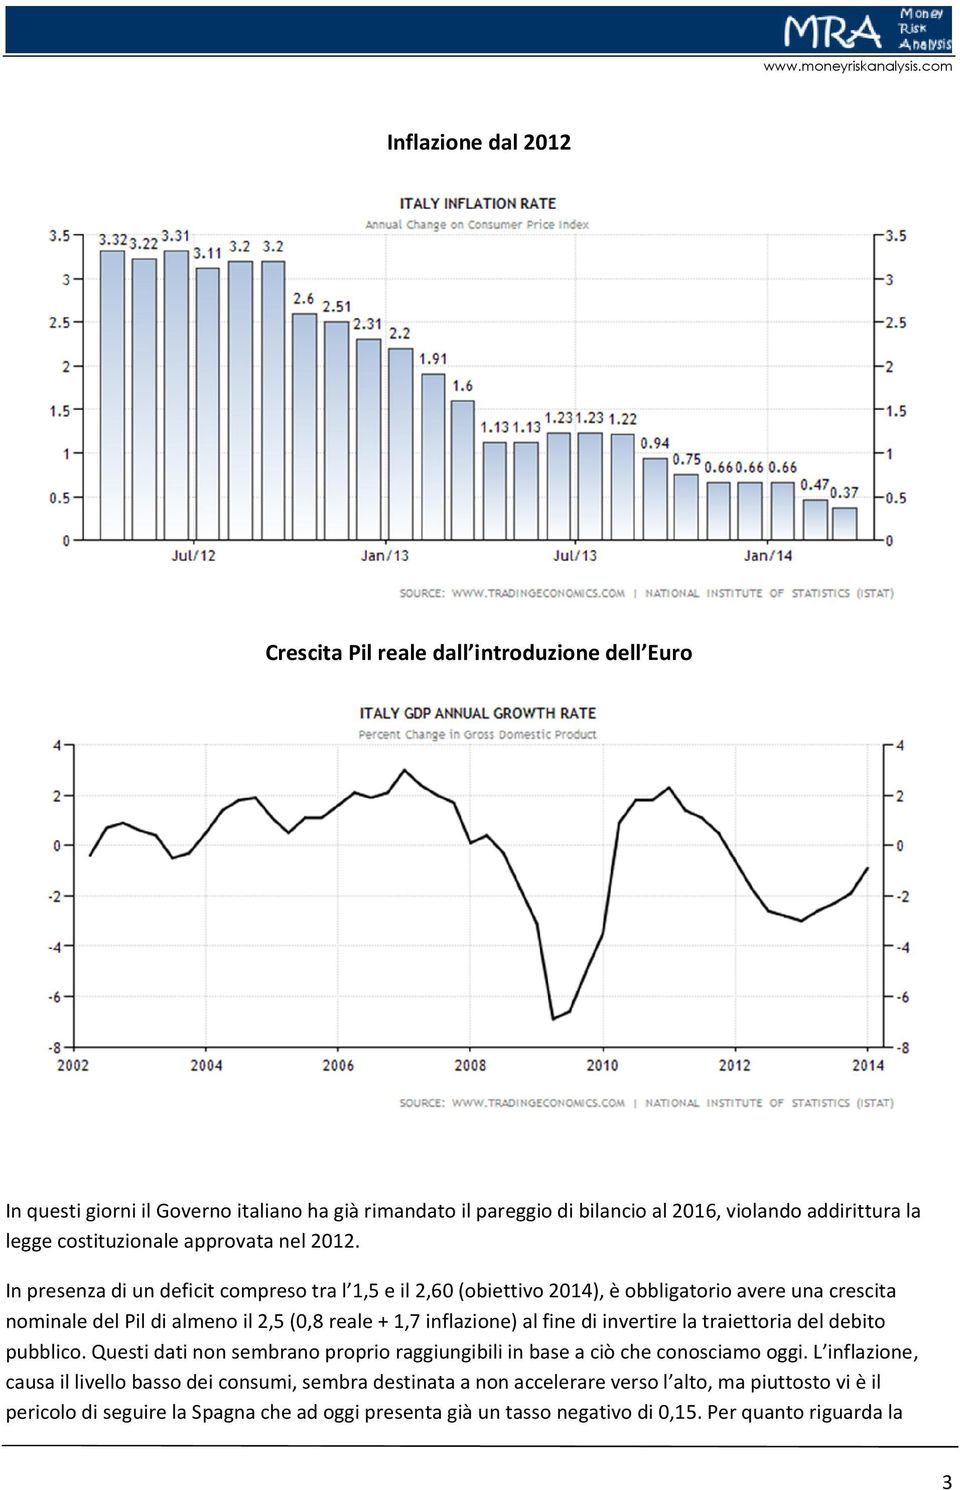 In presenza di un deficit compreso tra l 1,5 e il 2,60 (obiettivo 2014), è obbligatorio avere una crescita nominale del Pil di almeno il 2,5 (0,8 reale + 1,7 inflazione) al fine di